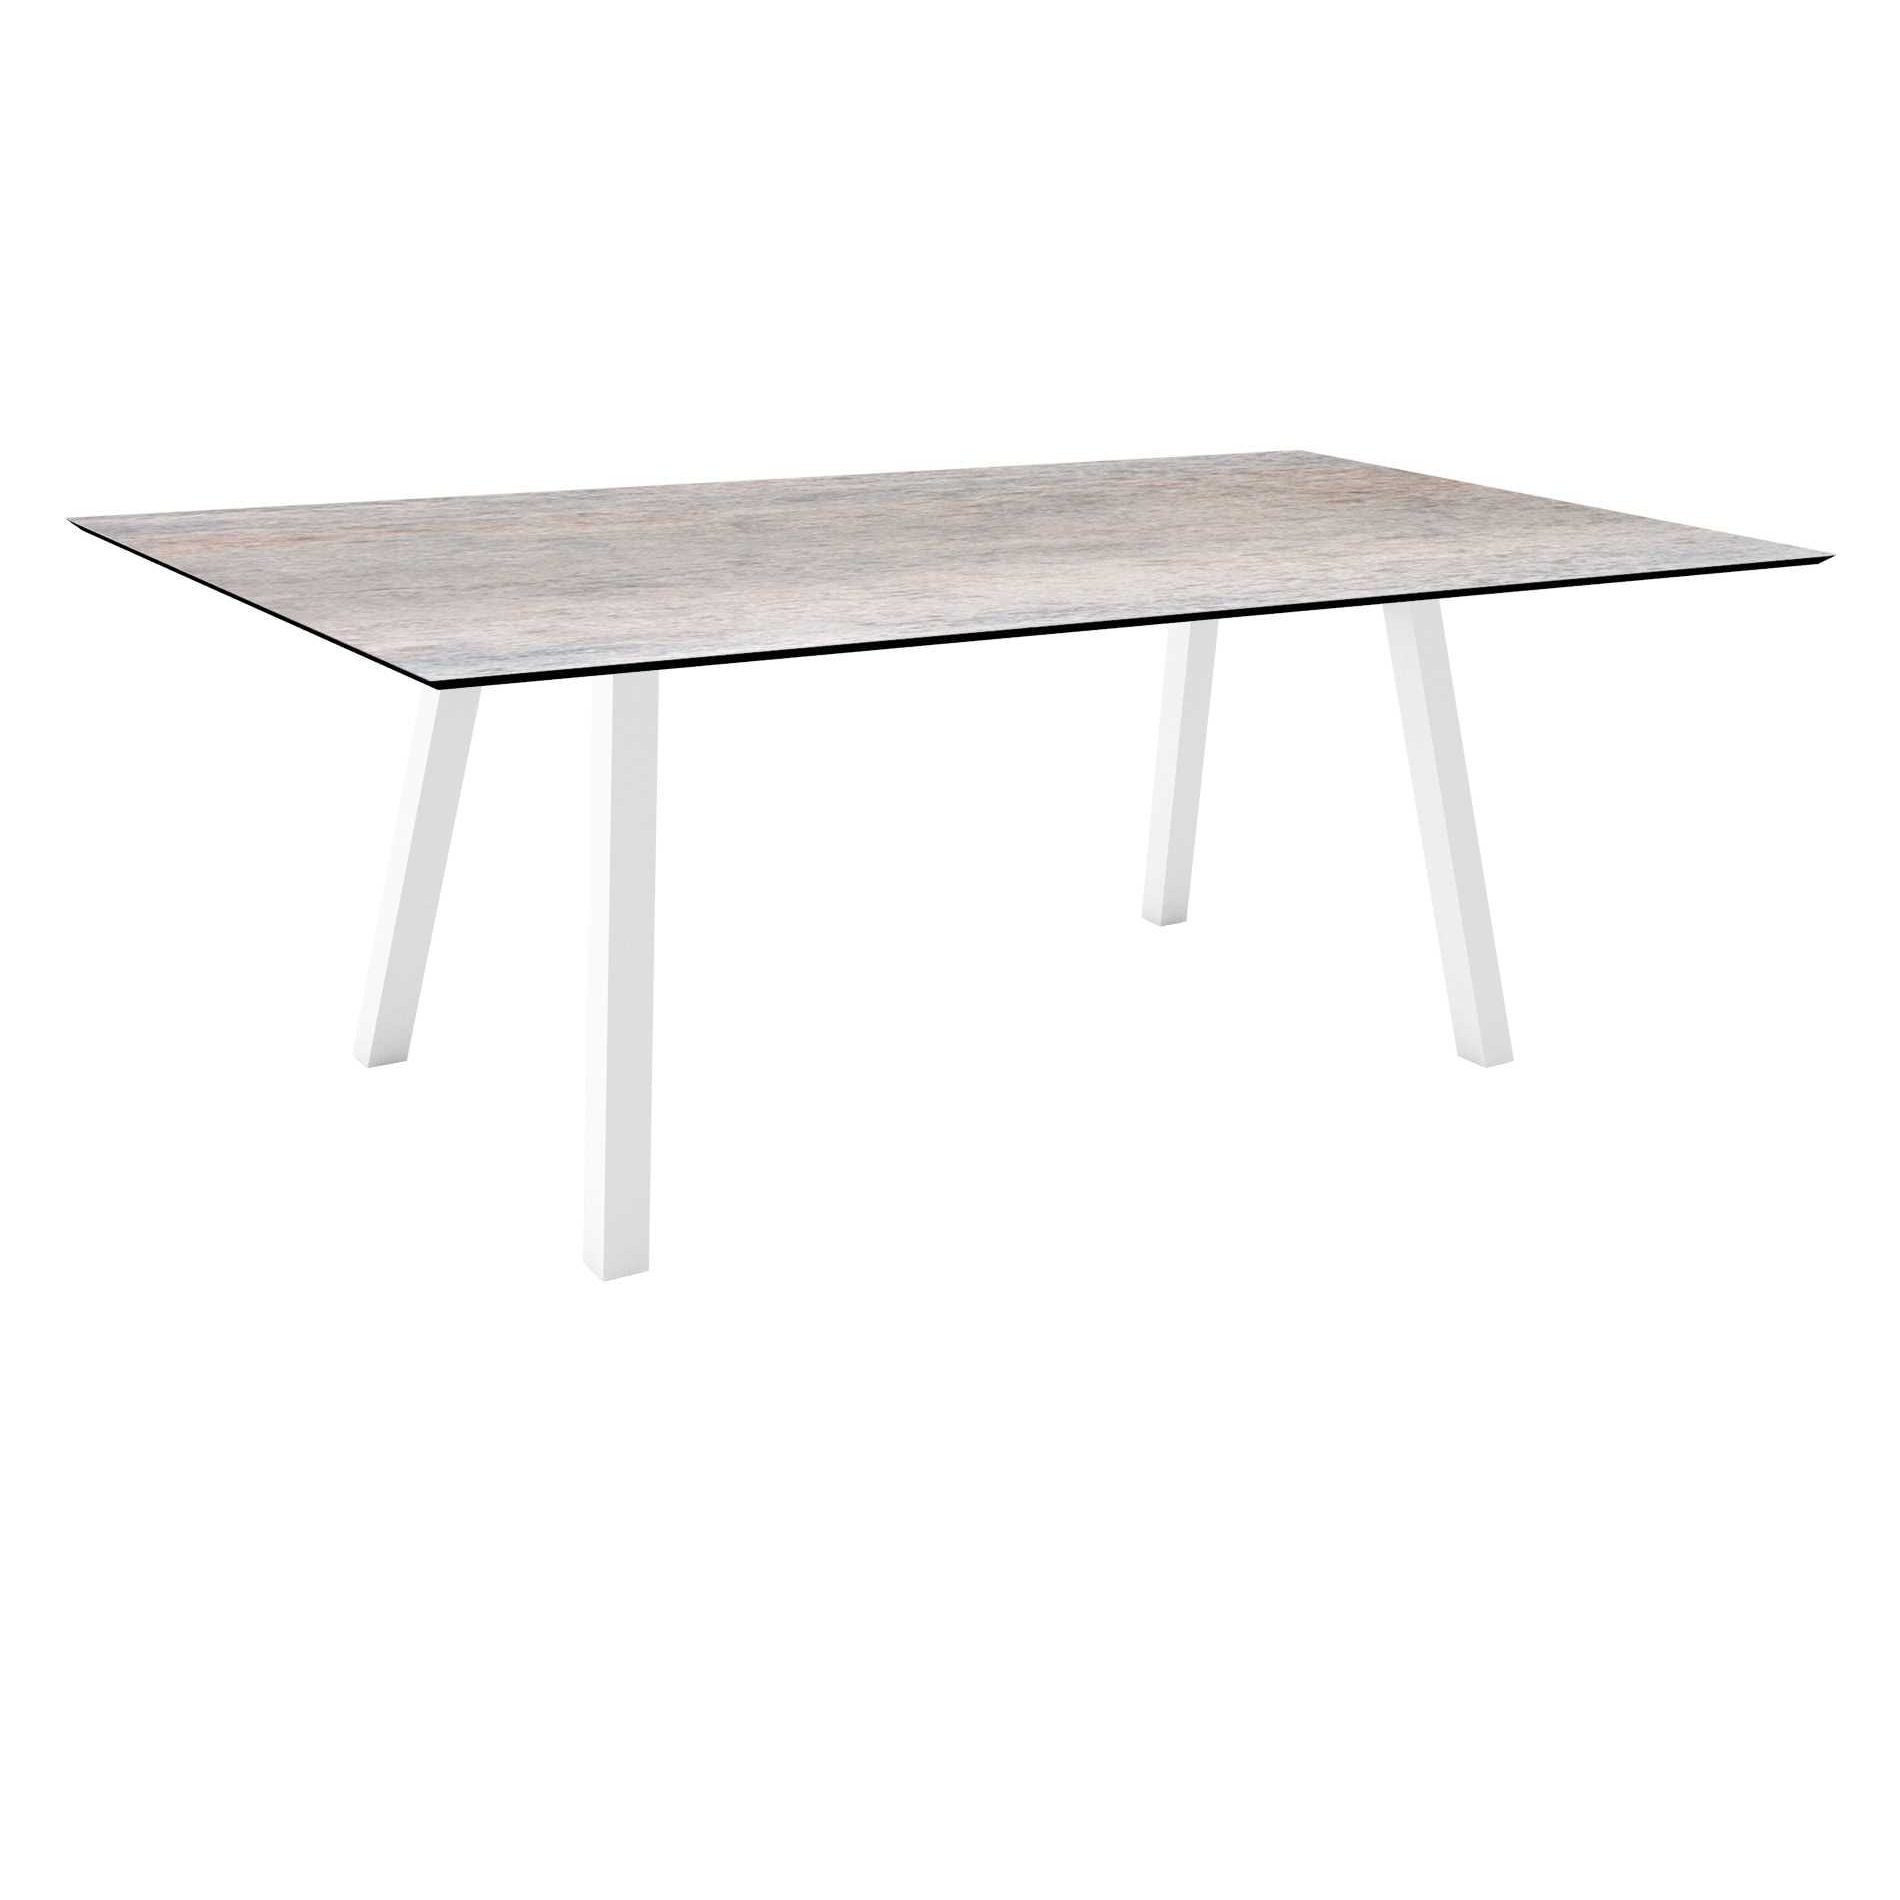 Stern Tisch "Interno", Größe 180x100cm, Alu weiß, Vierkantrohr, Tischplatte HPL Smoky